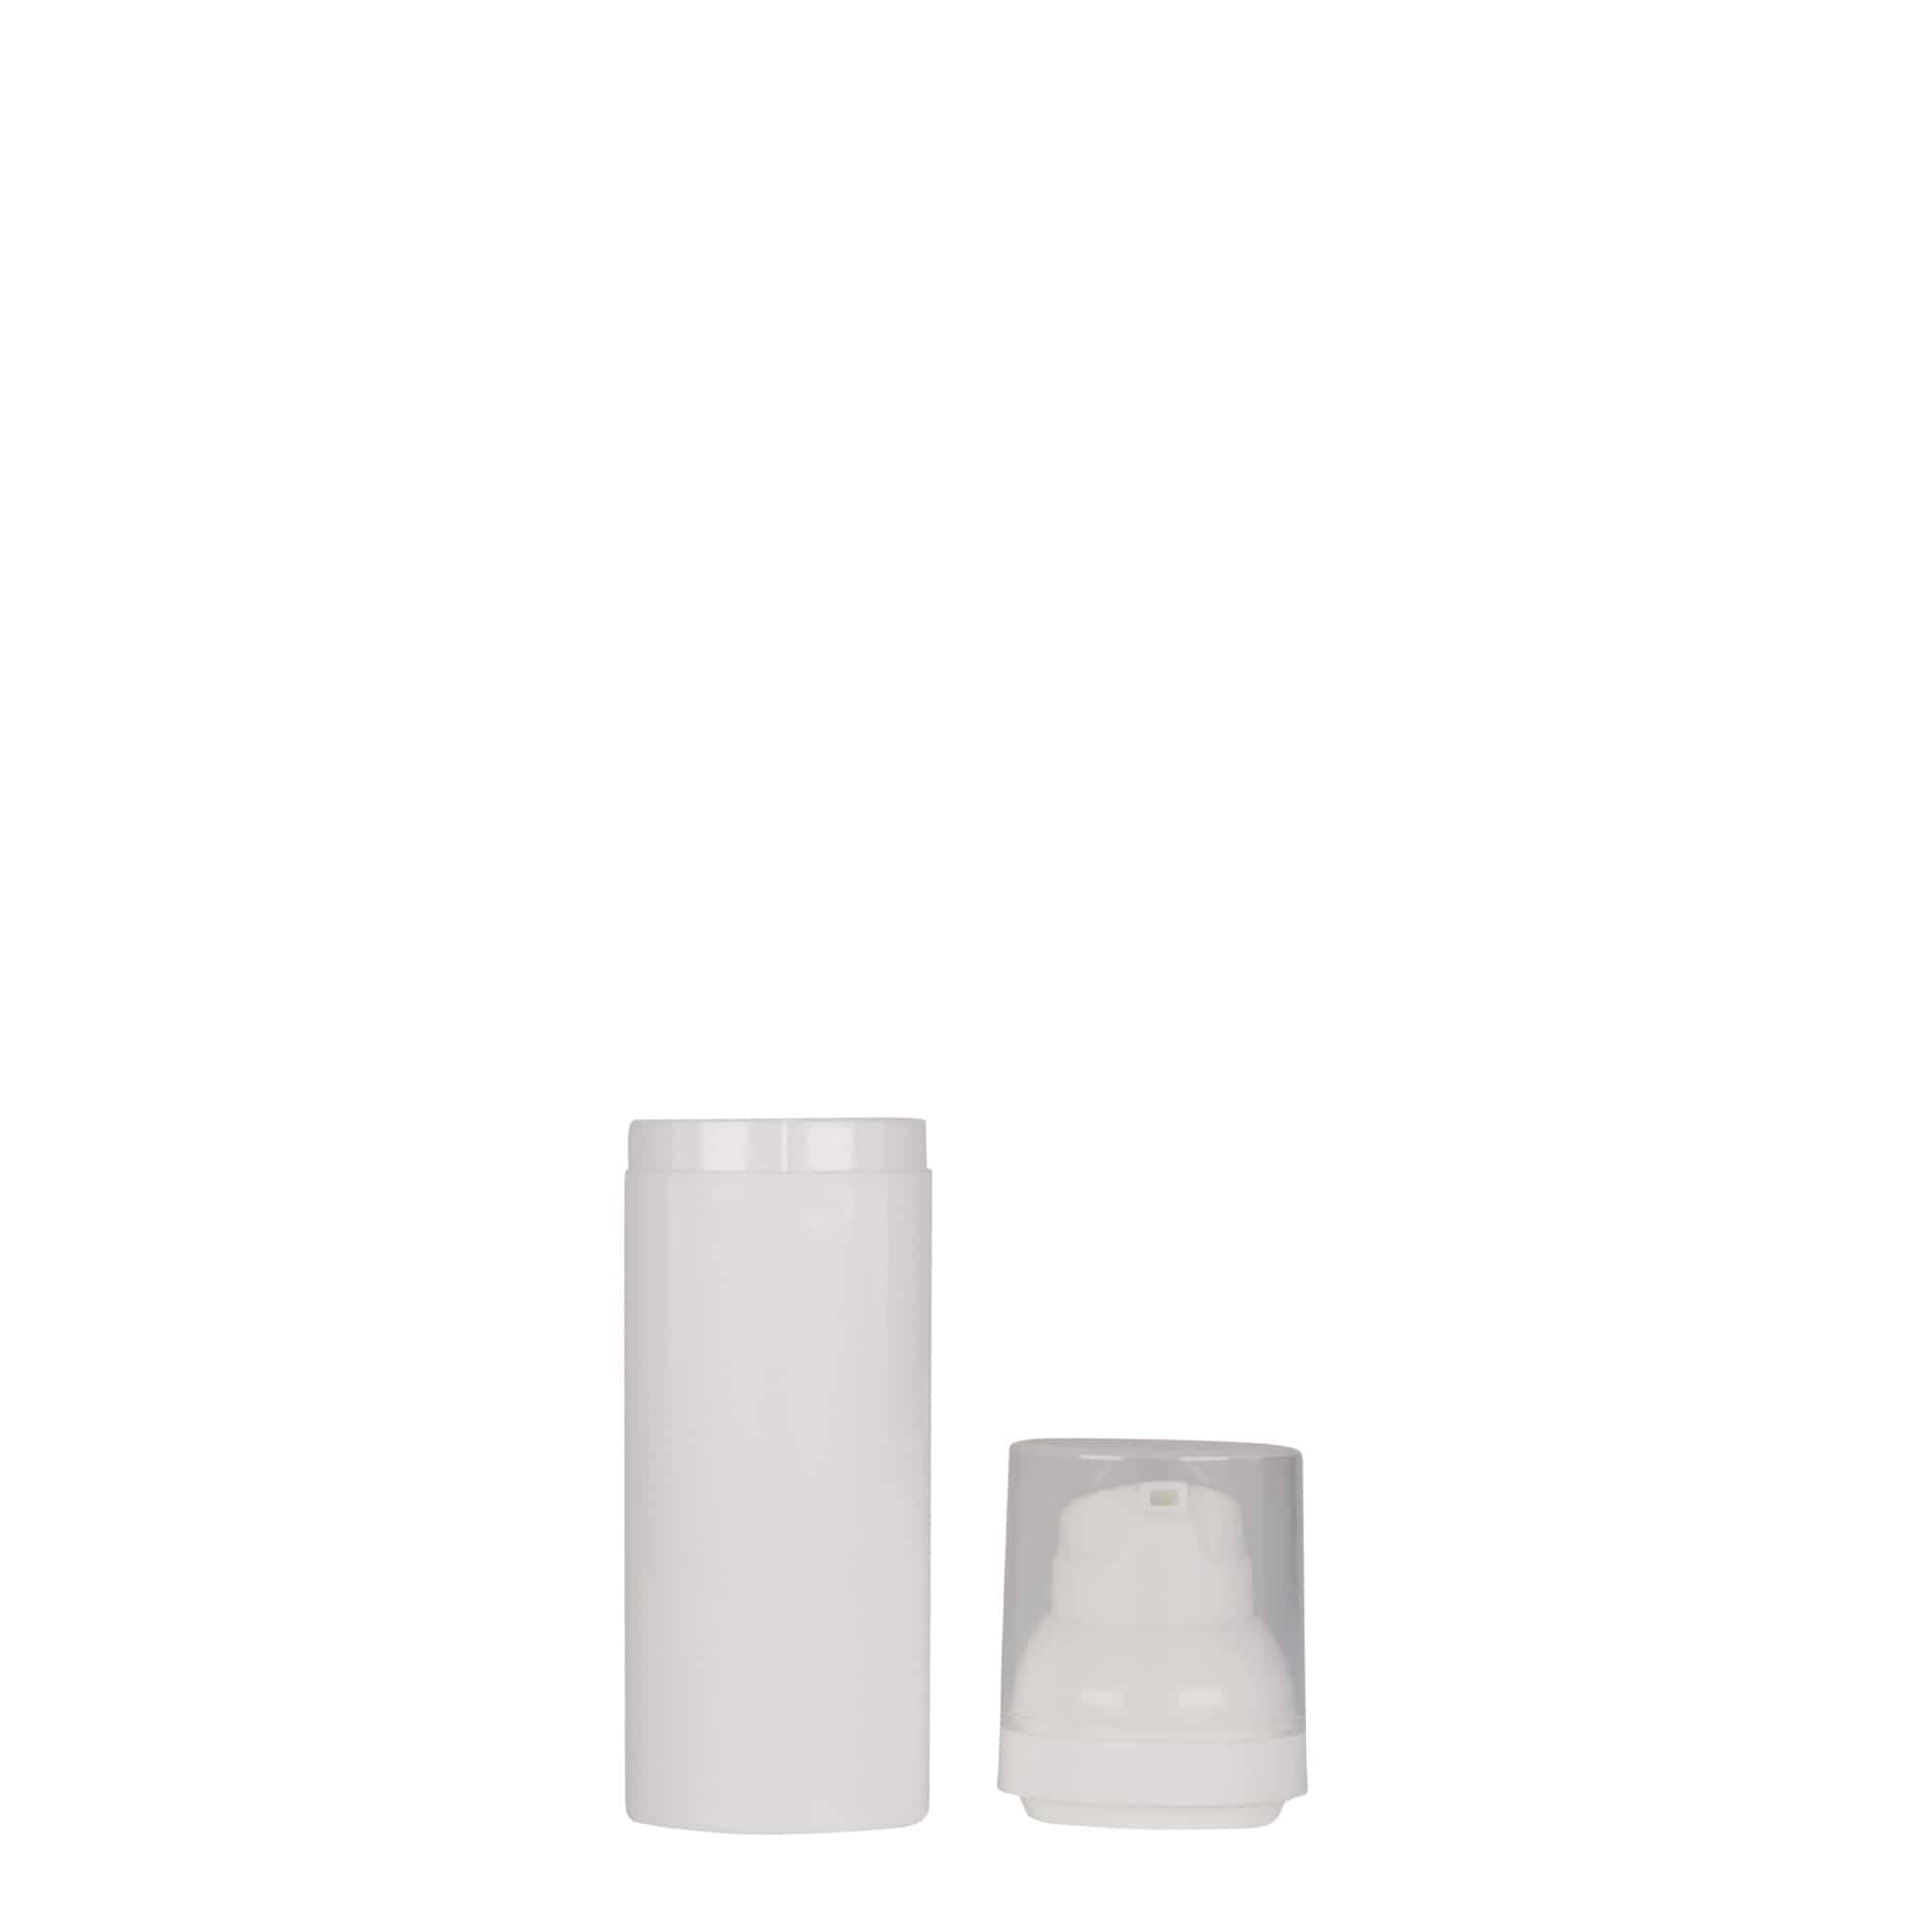 Bezvzduchový dávkovač 50 ml 'Mezzo', plast PP, bílý